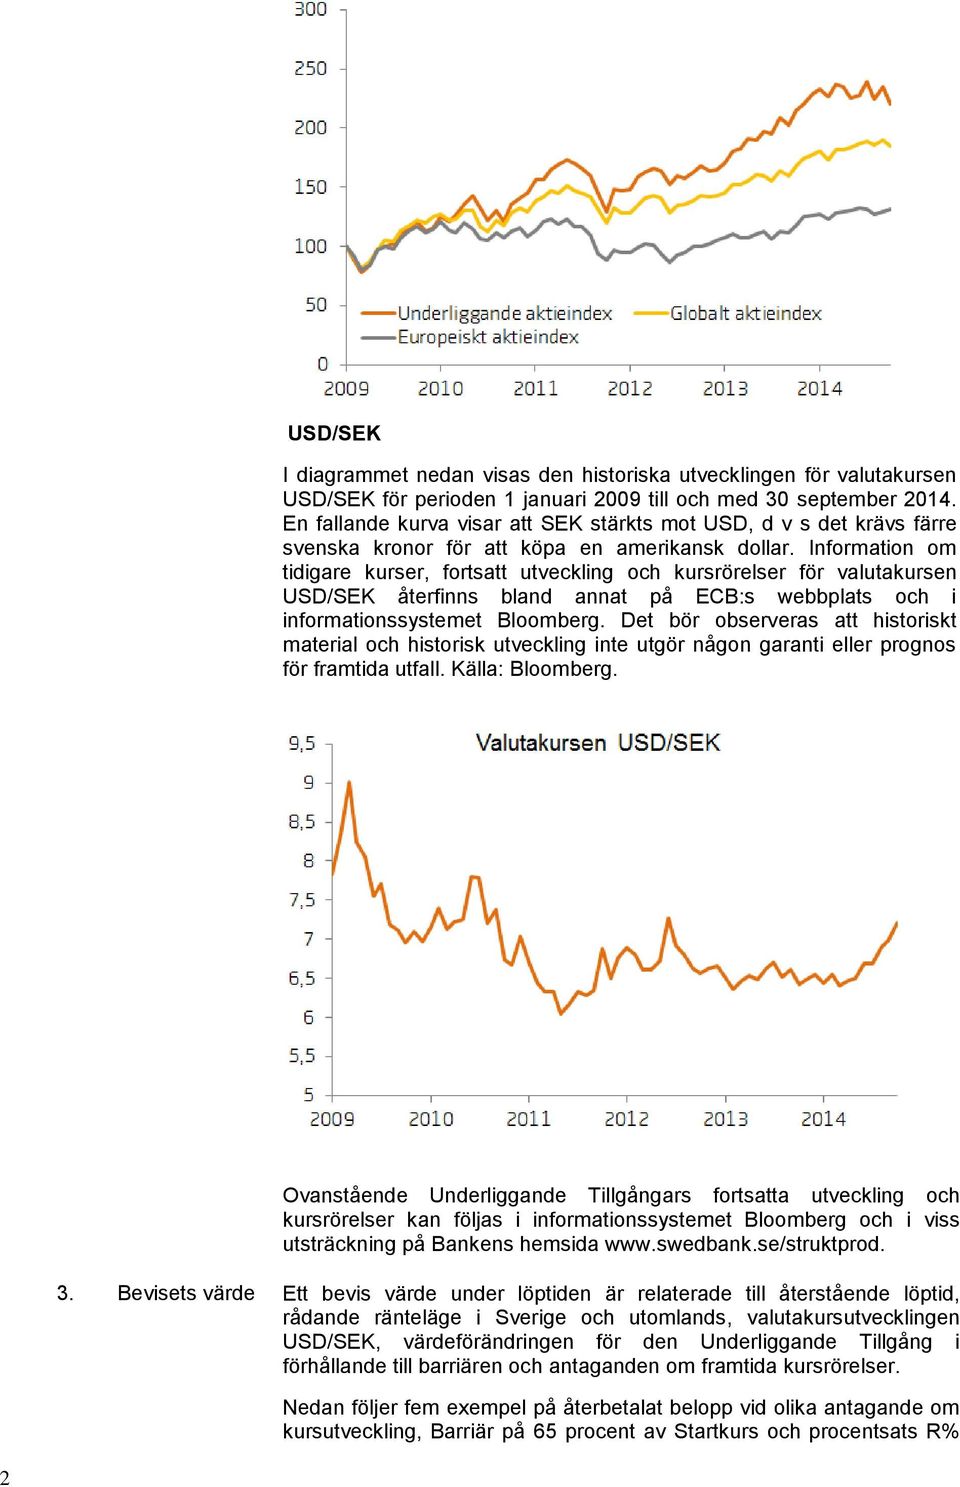 Information om tidigare kurser, fortsatt utveckling och kursrörelser för valutakursen USD/SEK återfinns bland annat på ECB:s webbplats och i informationssystemet Bloomberg.